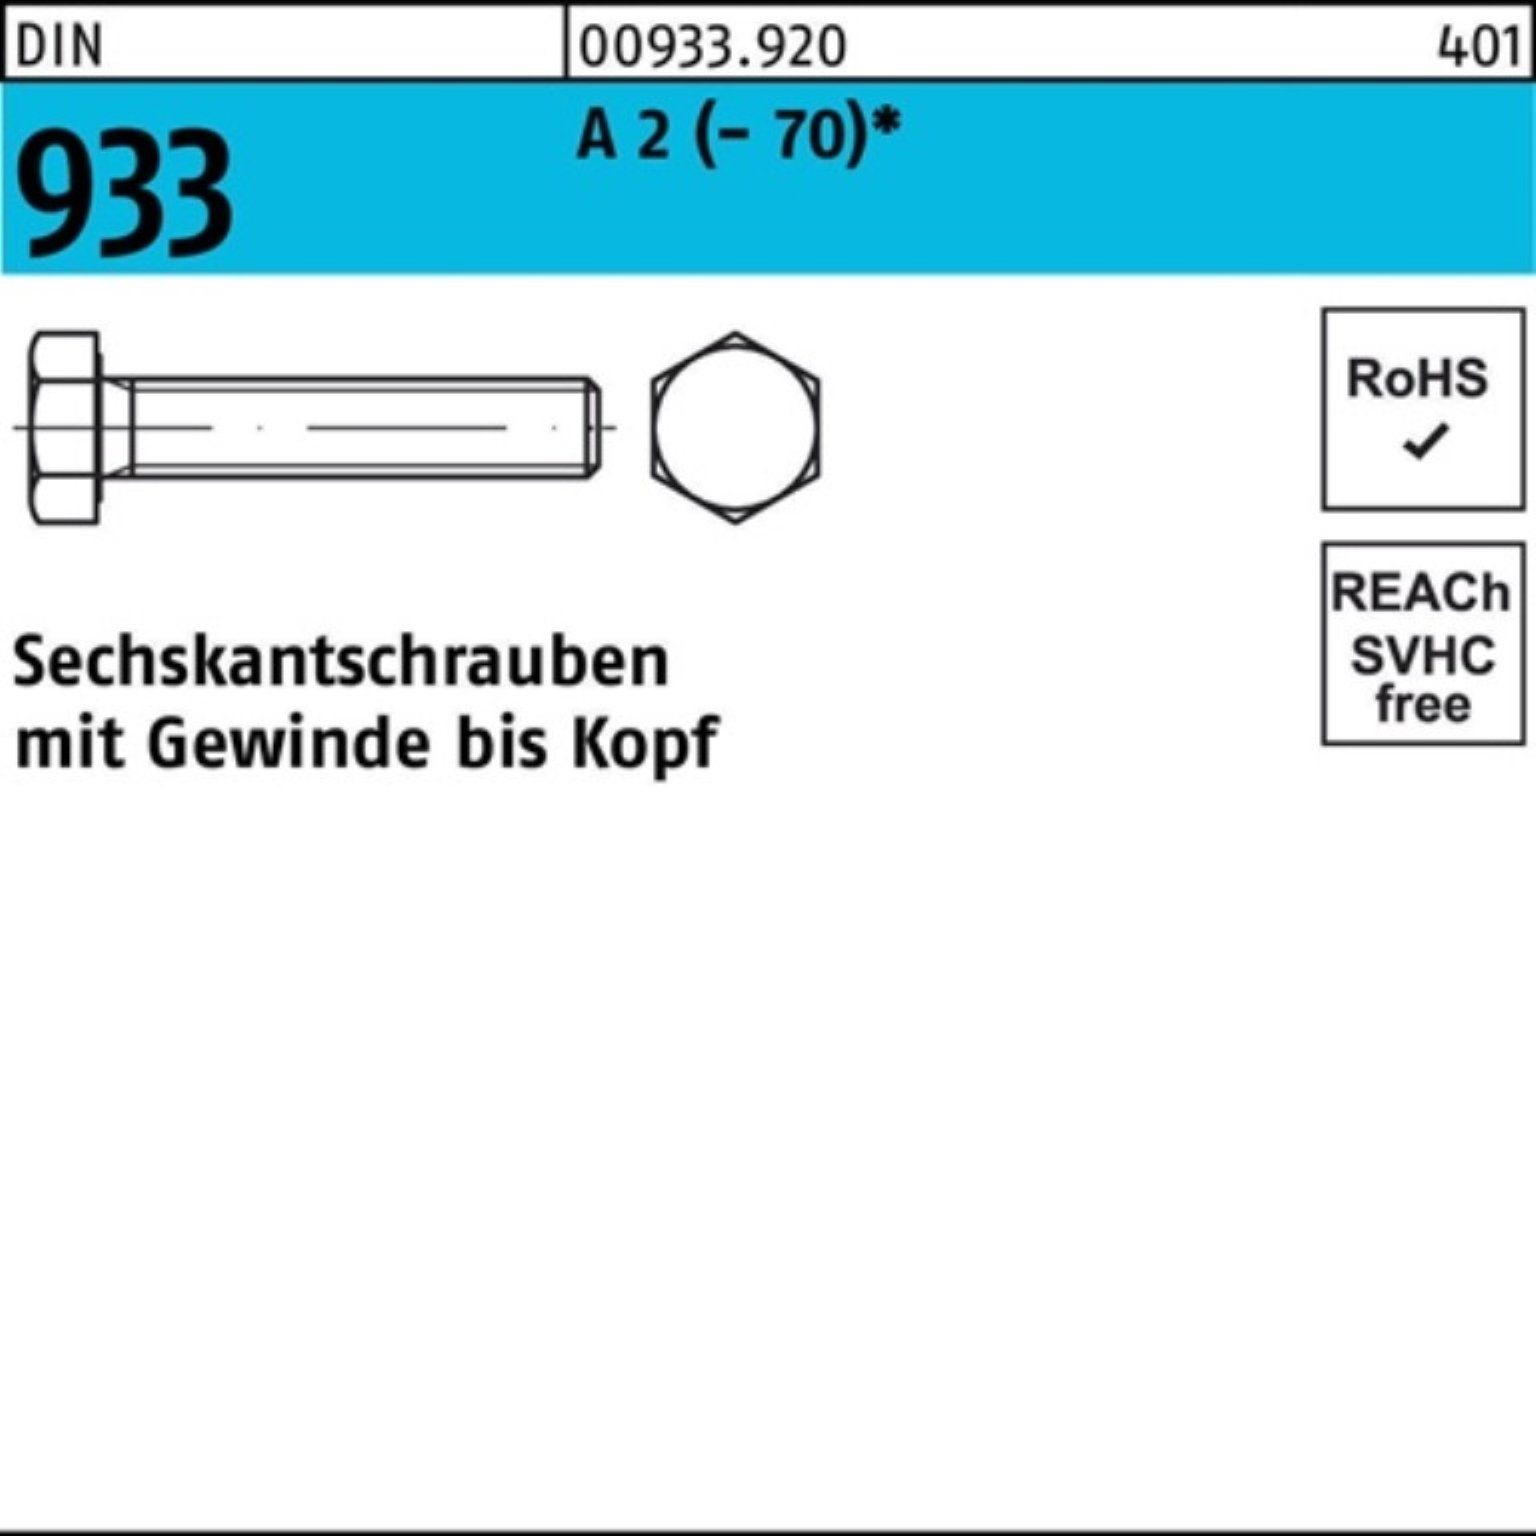 Reyher Sechskantschraube 200er Pack Sechskantschraube DIN 933 VG M8x 30 A 2 (70) 200 Stück D